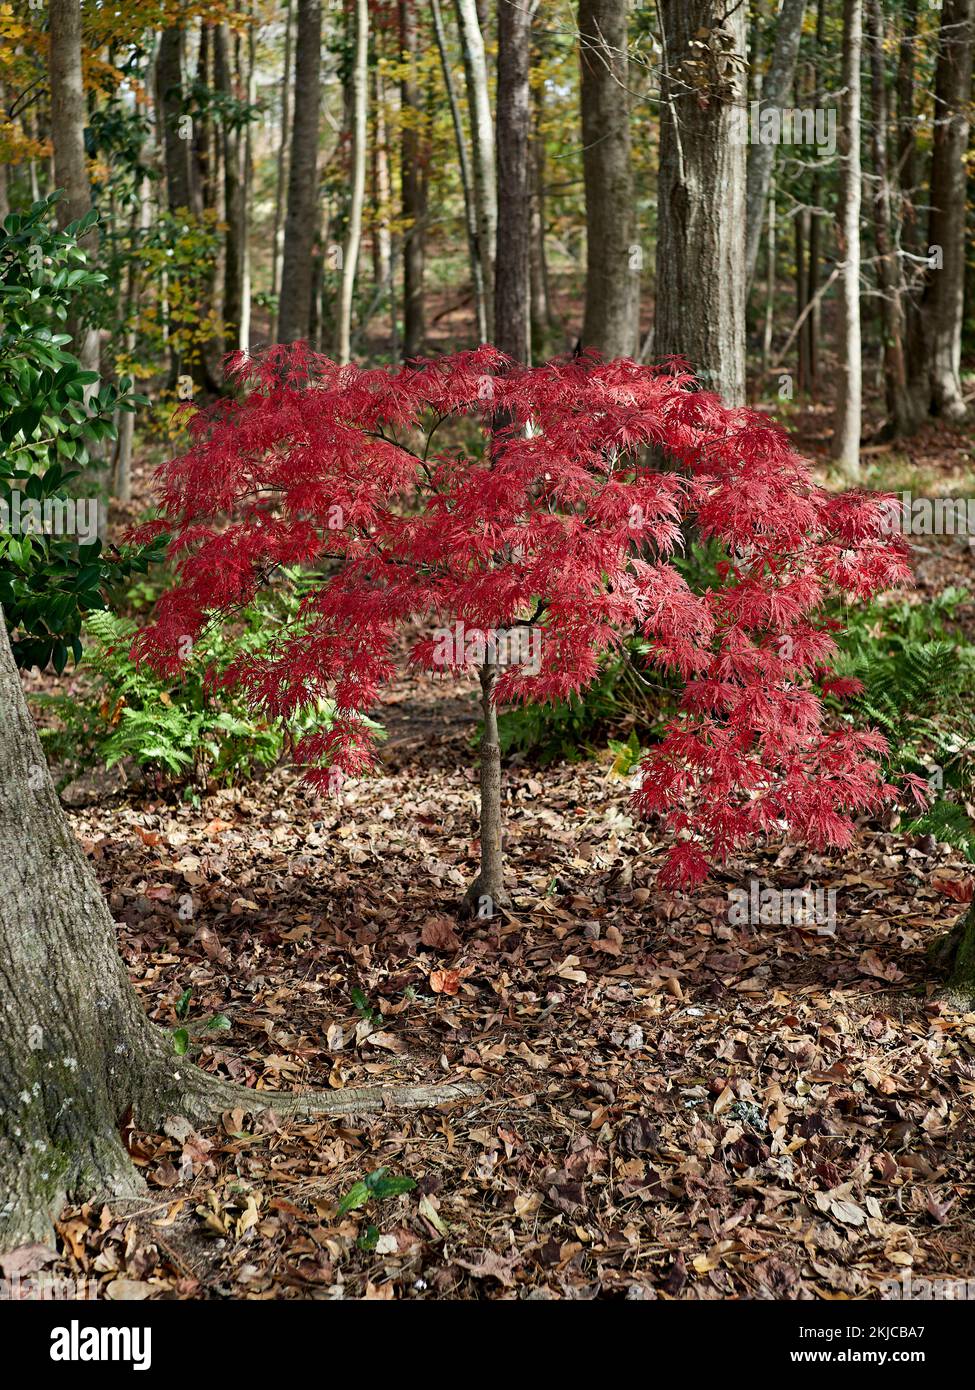 Palmatum Atropurpureum dissectum, (Acer palmatum), Rotspitzenblatt Japanischer Ahorn hinterlässt ein Mitglied der japanischen Ahornfamilie in voller Herbstfarbe. Stockfoto